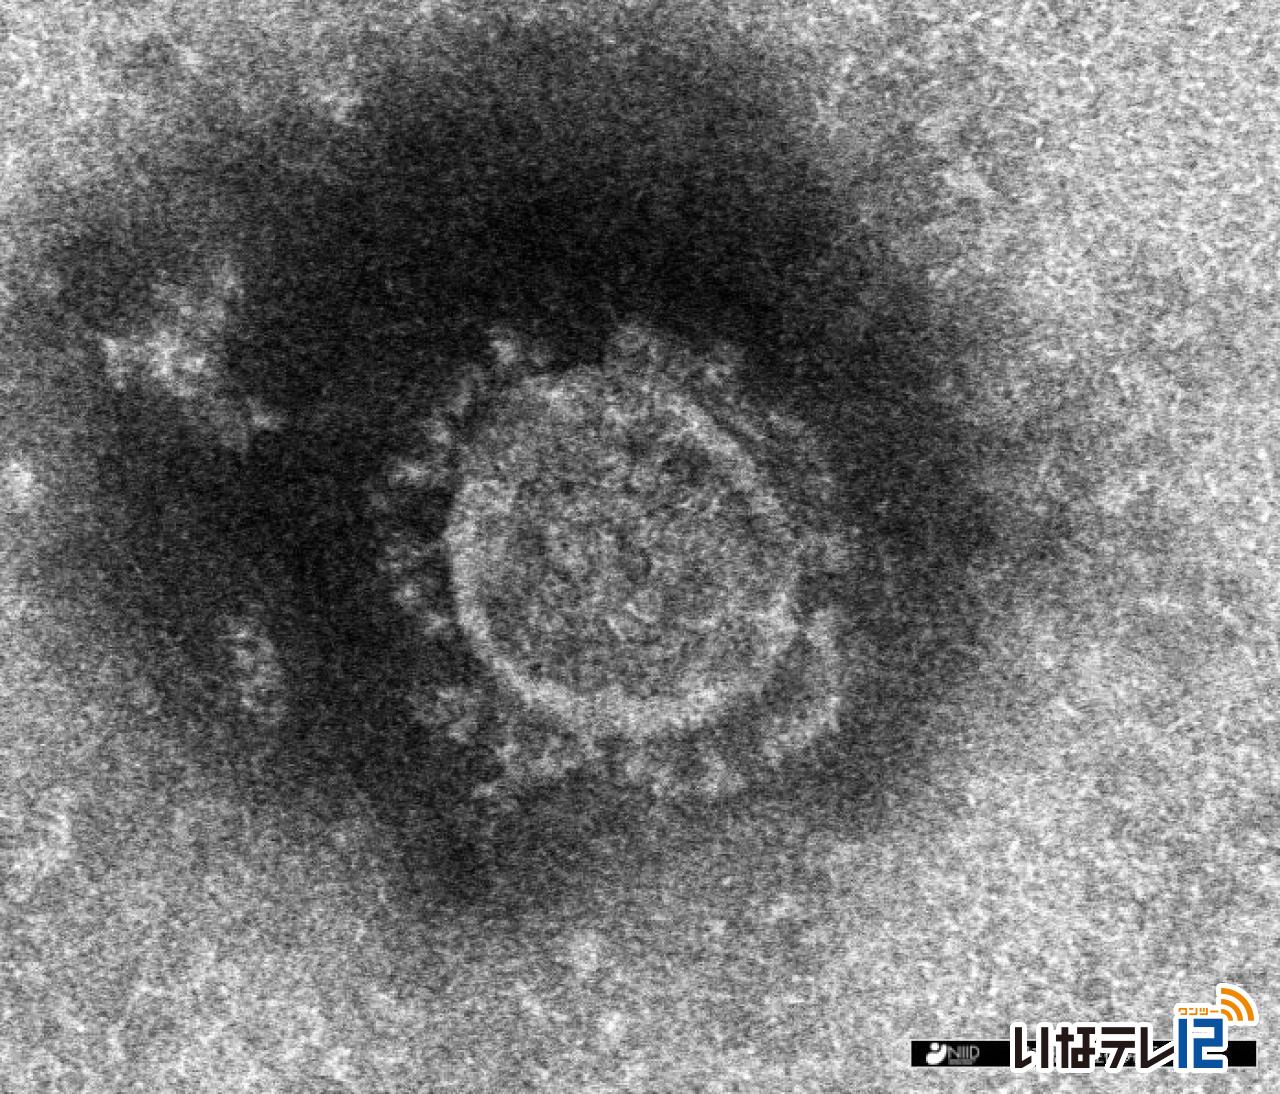 長野県内で１４日新たに１，４７９人の新型コロナウイルス感染確認